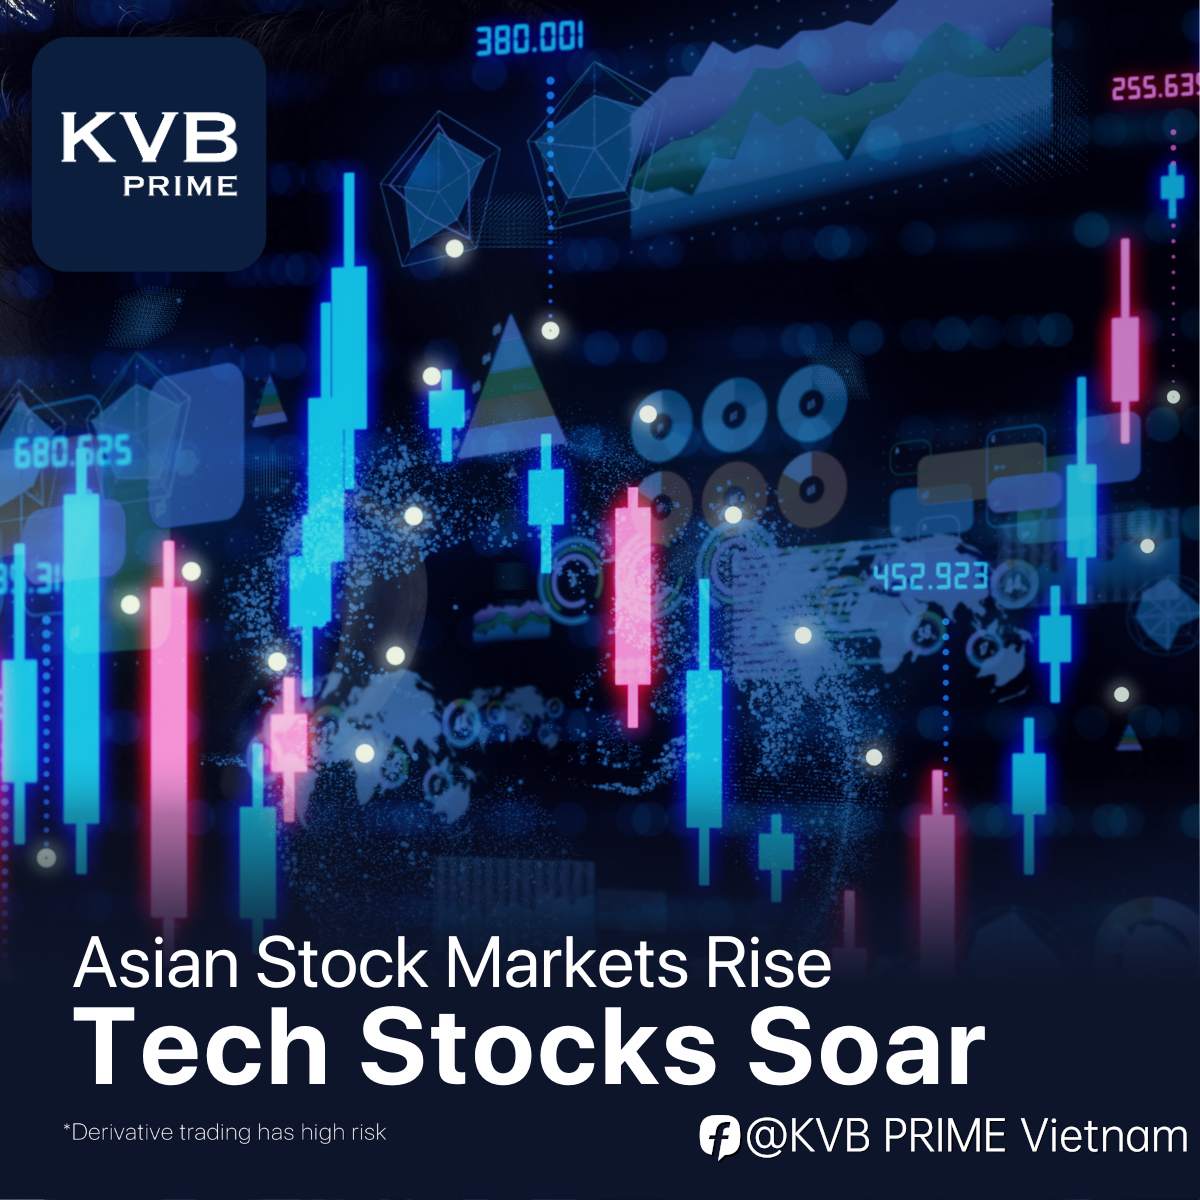 Thị trường chứng khoán châu Á tăng, các cổ phiếu công nghệ bùng nổ